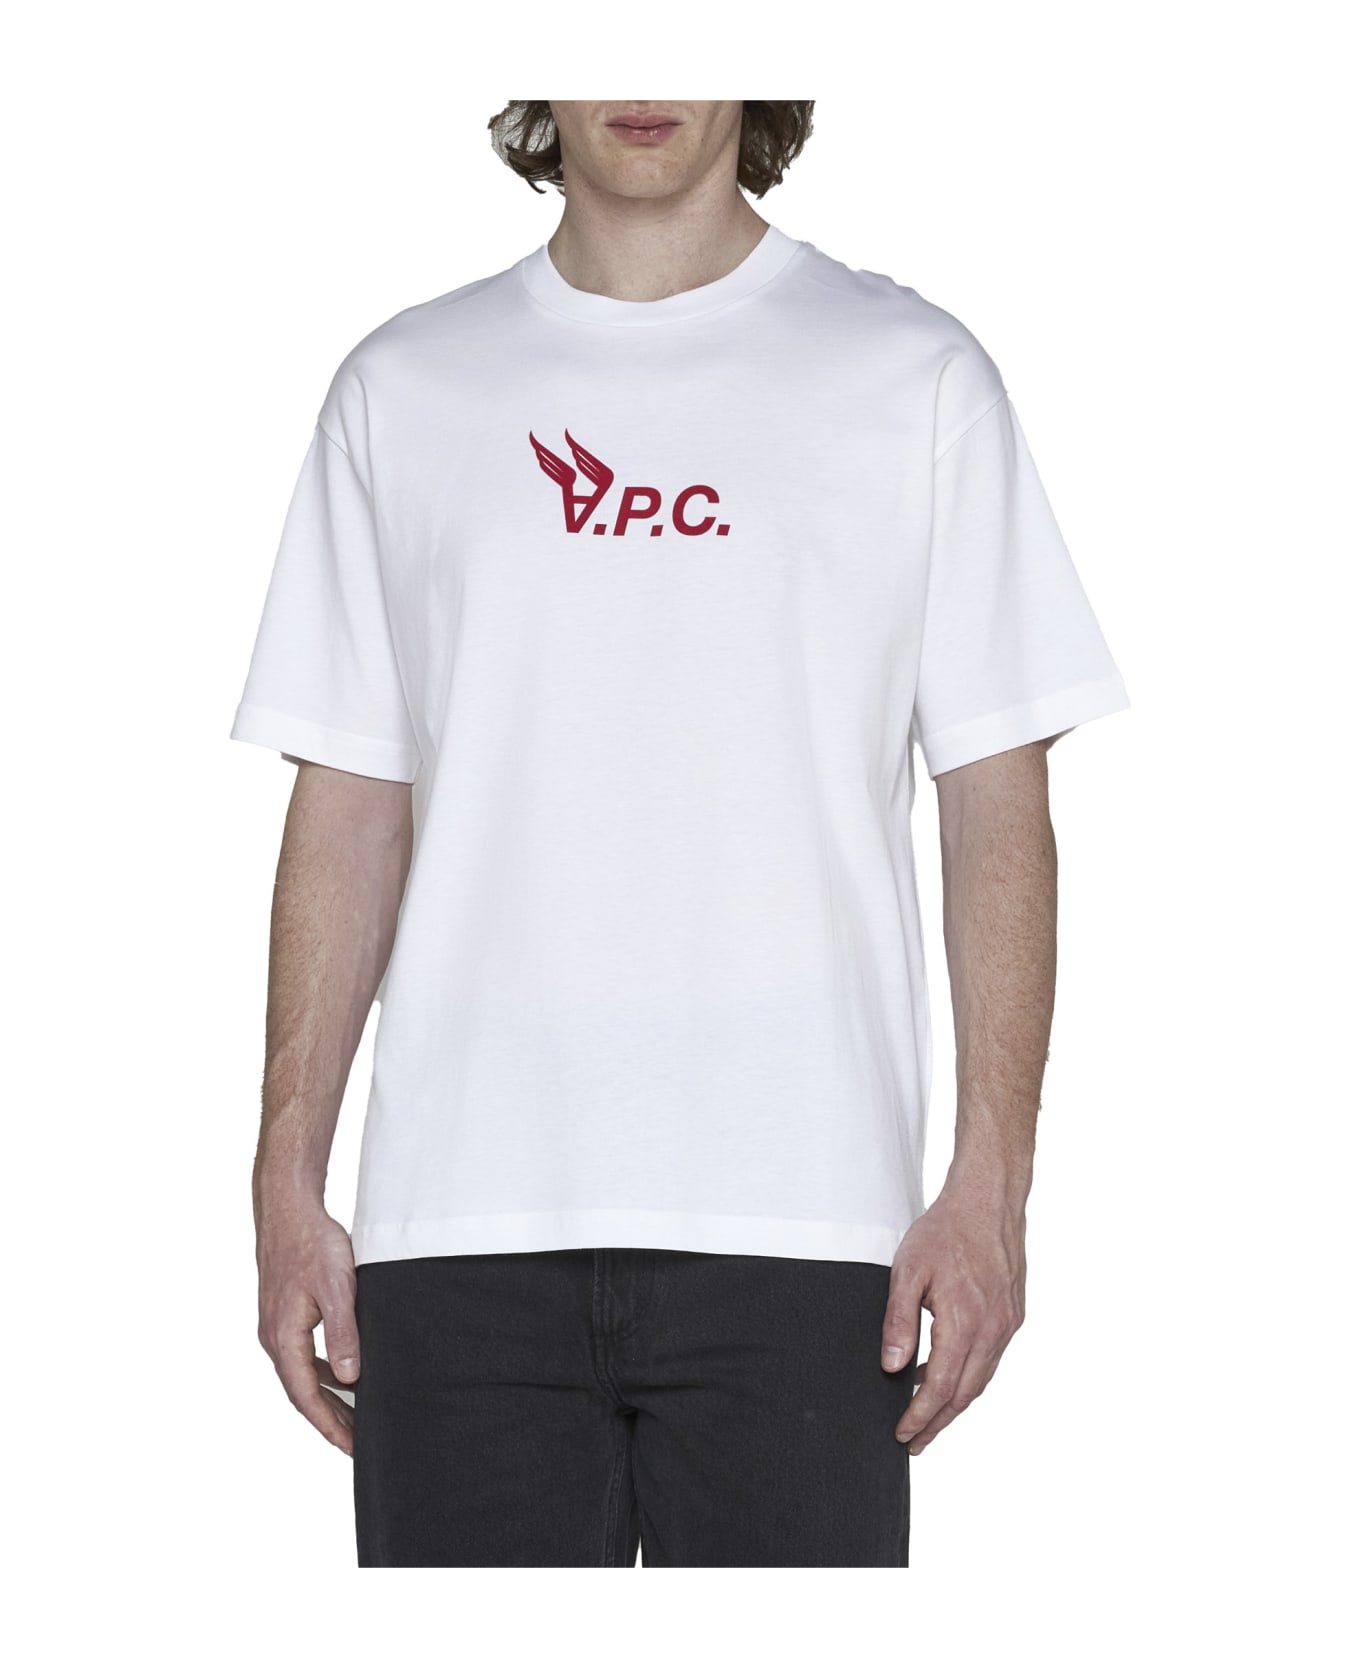 A.P.C. Hermance T-shirt - Cream